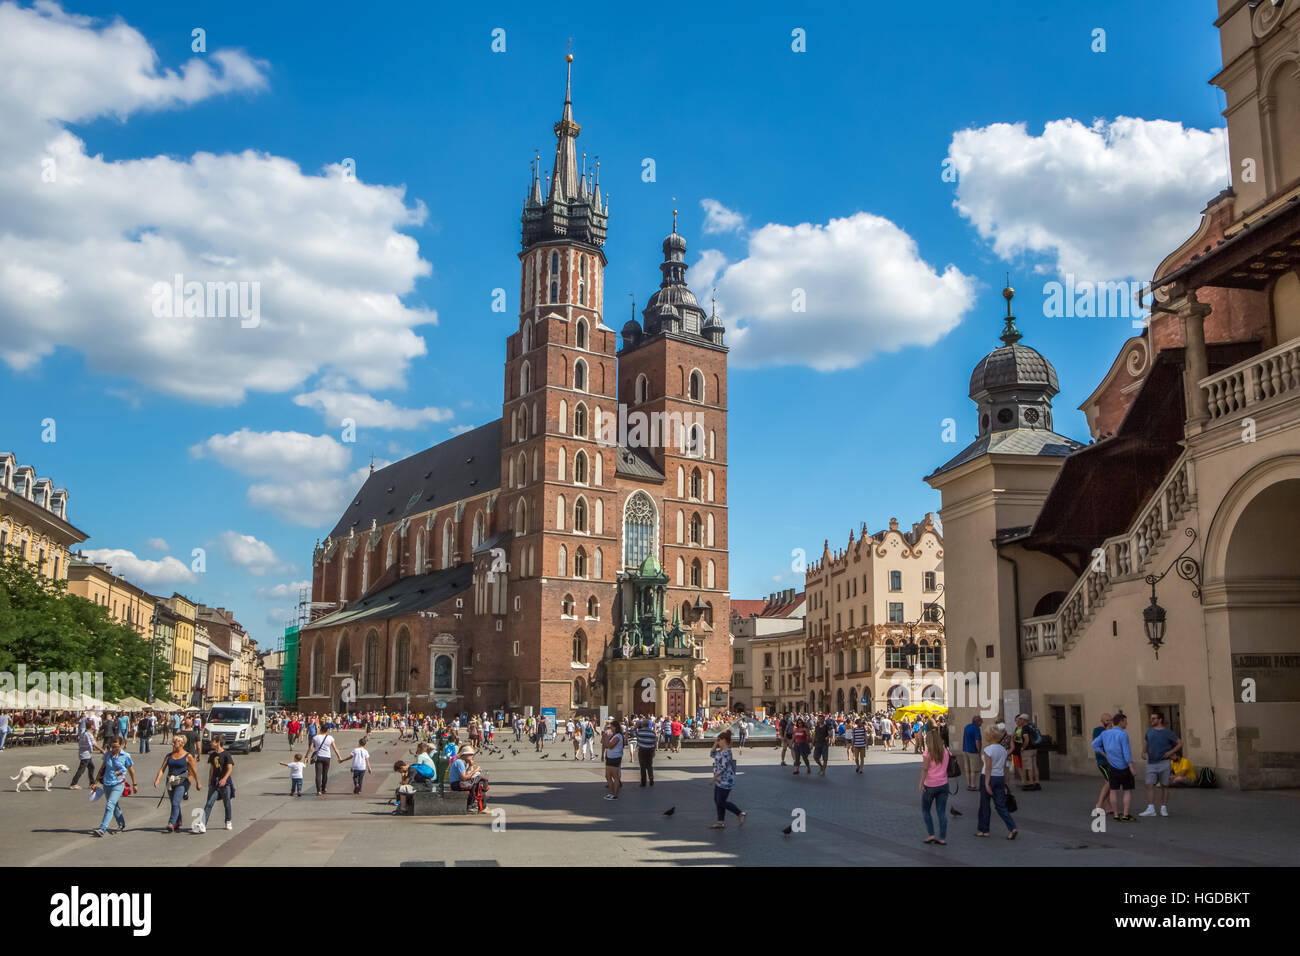 Market Square in Krakow Stock Photo